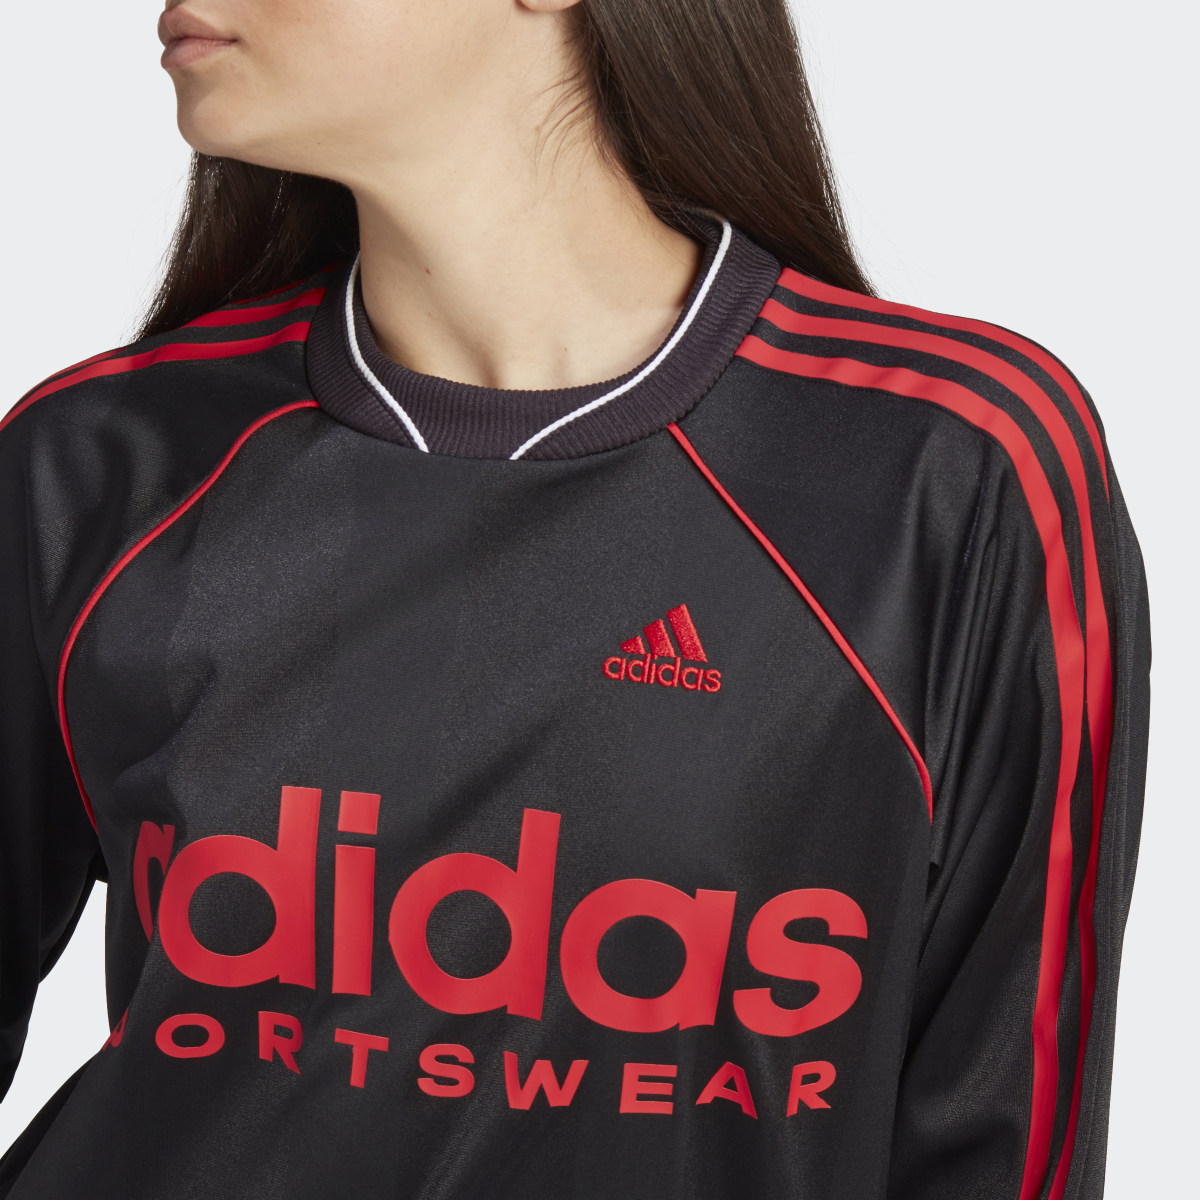 Adidas Jacquard Long-Sleeve Top Jersey. 8